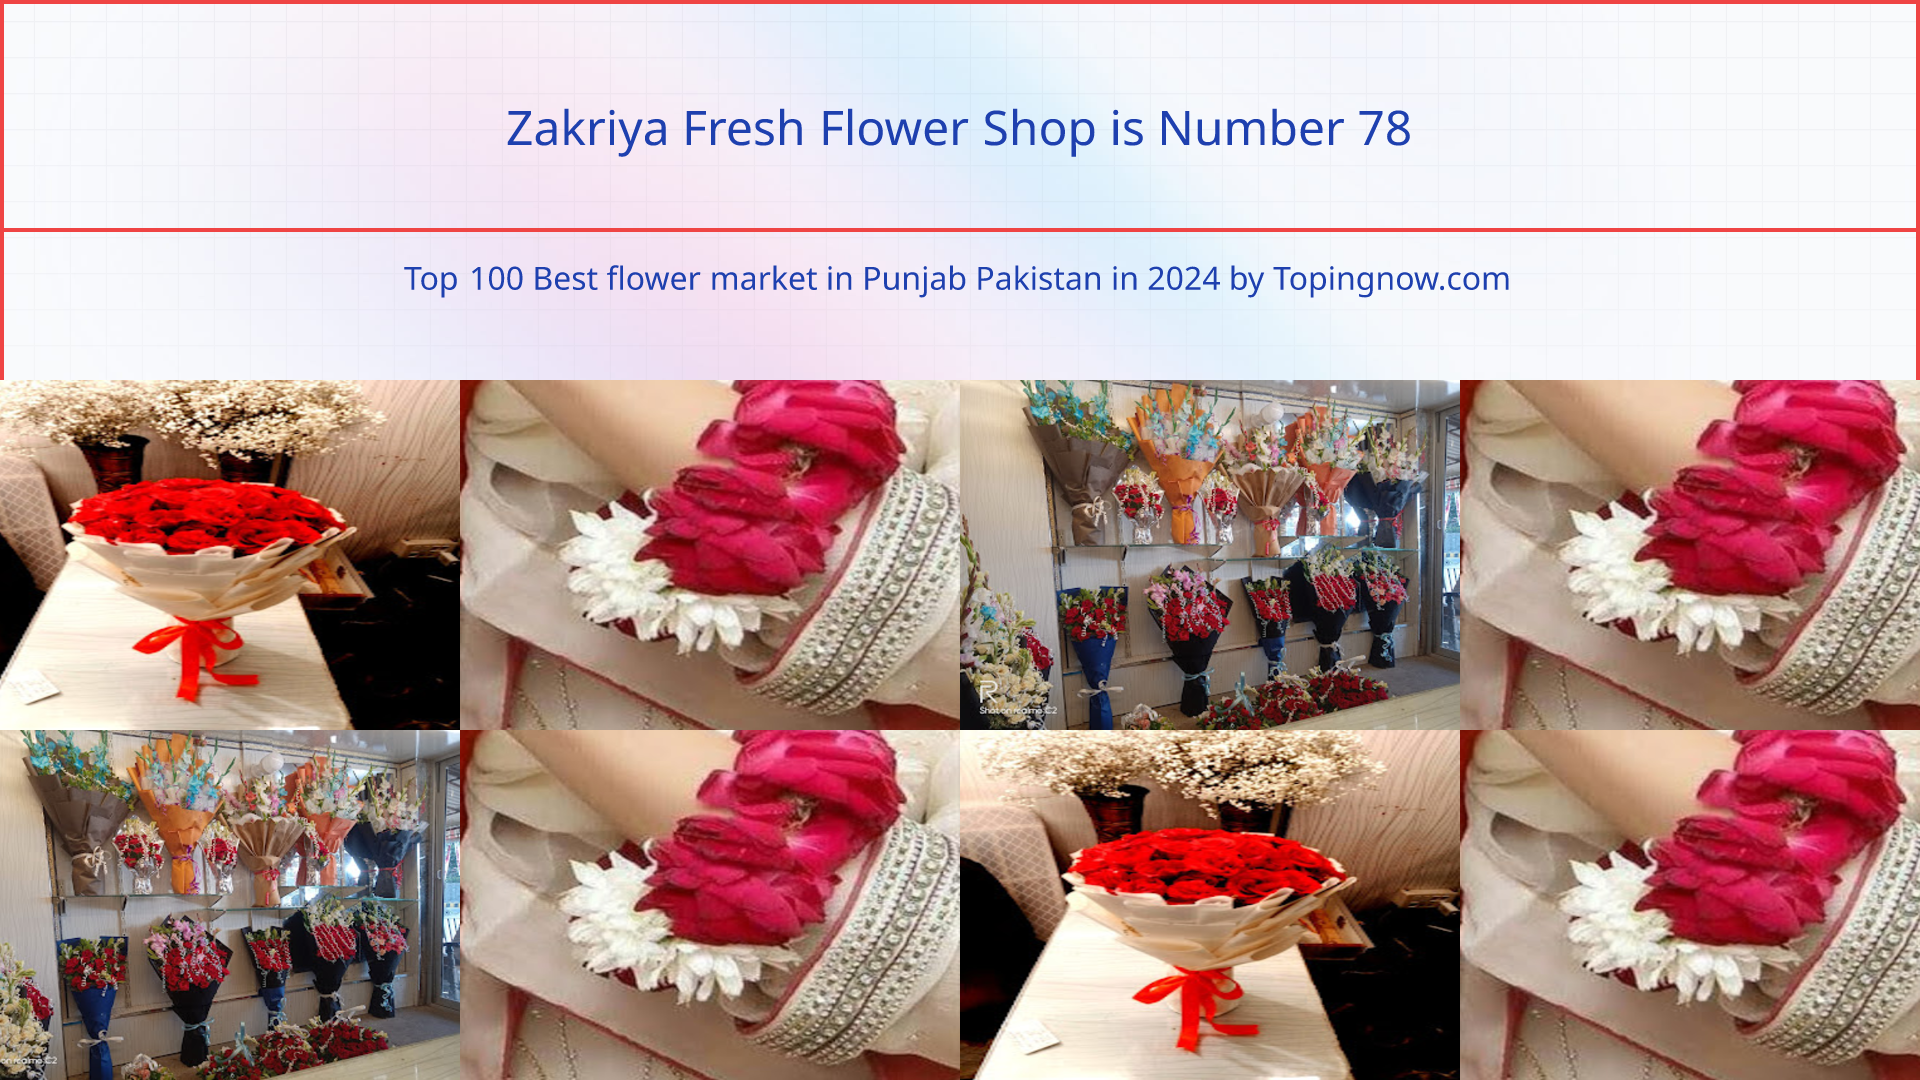 Zakriya Fresh Flower Shop: Top 100 Best flower market in Punjab Pakistan in 2024